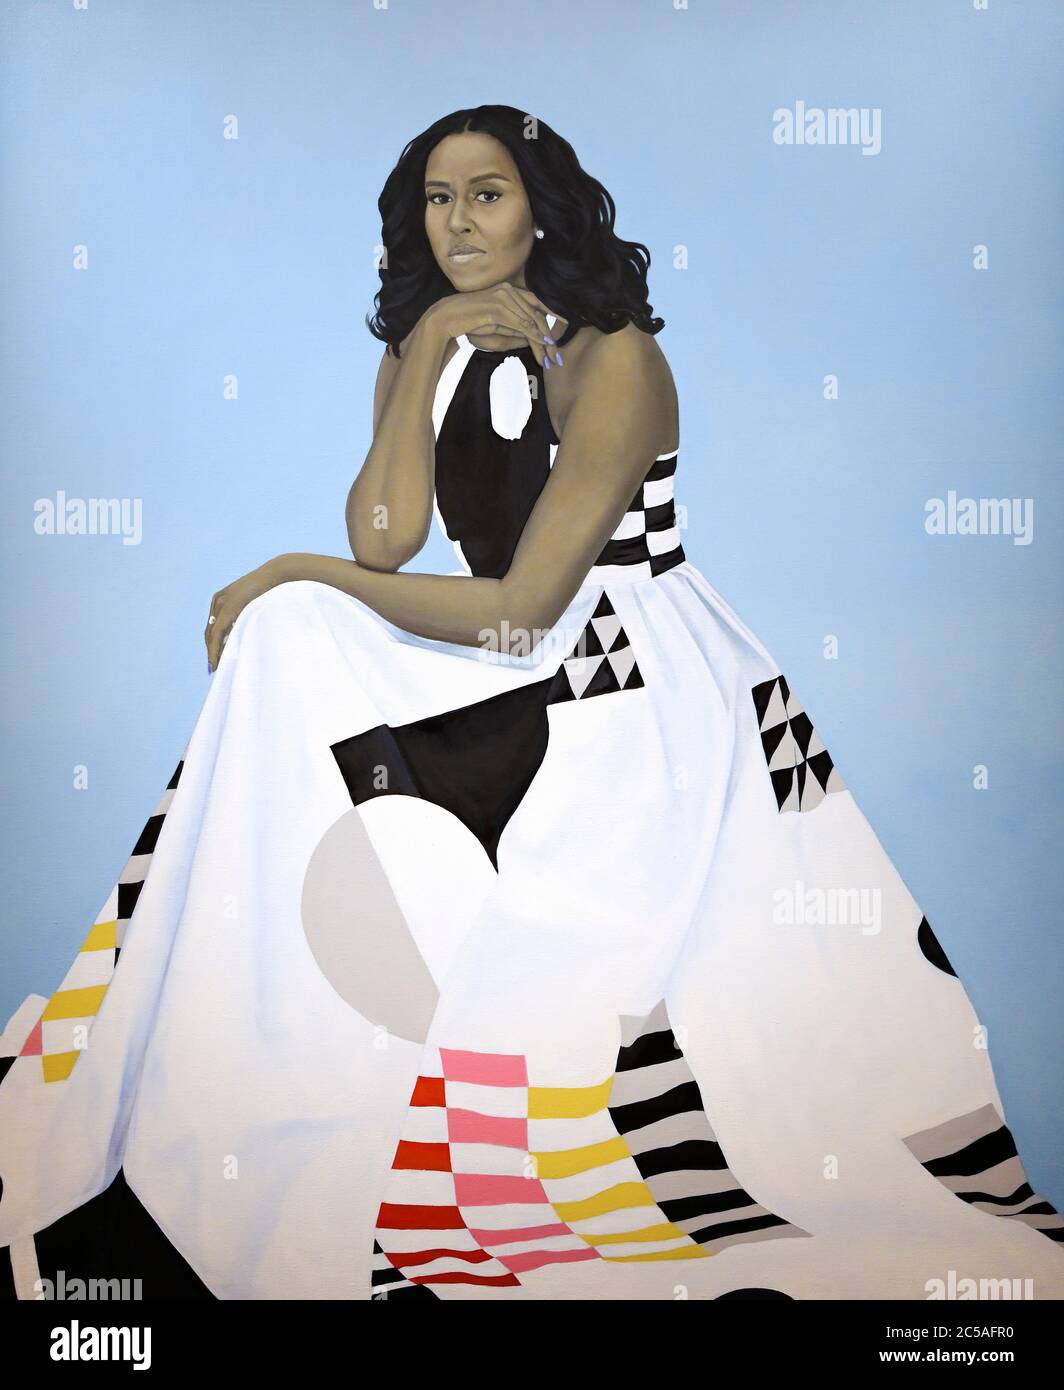 Michelle Obama portrait, 2018 Stock Photo